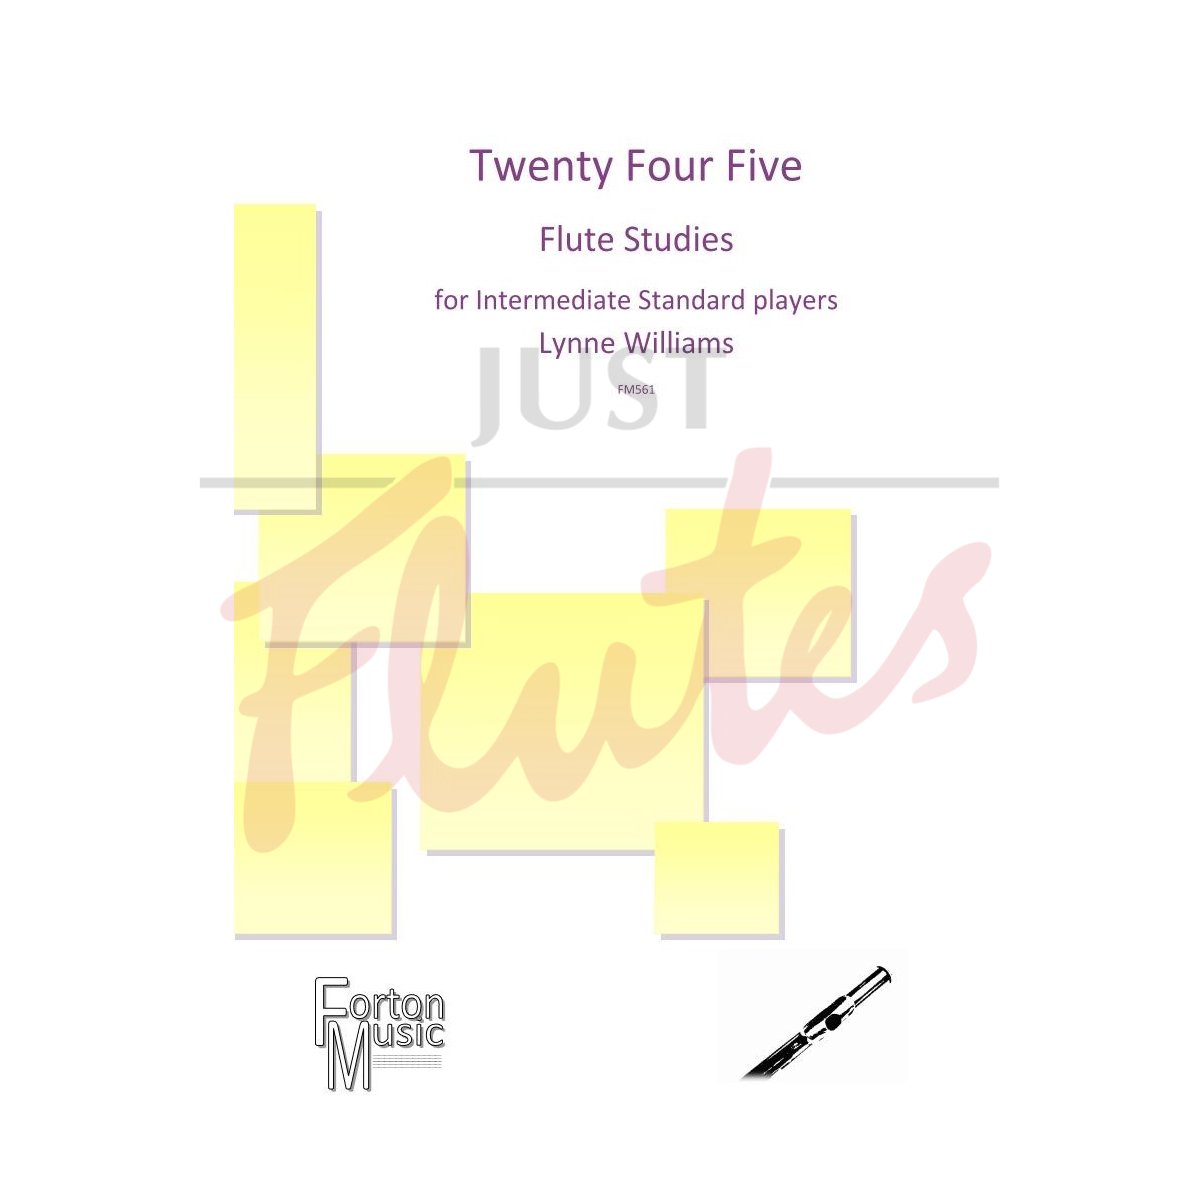 Twenty Four Five Flute Studies